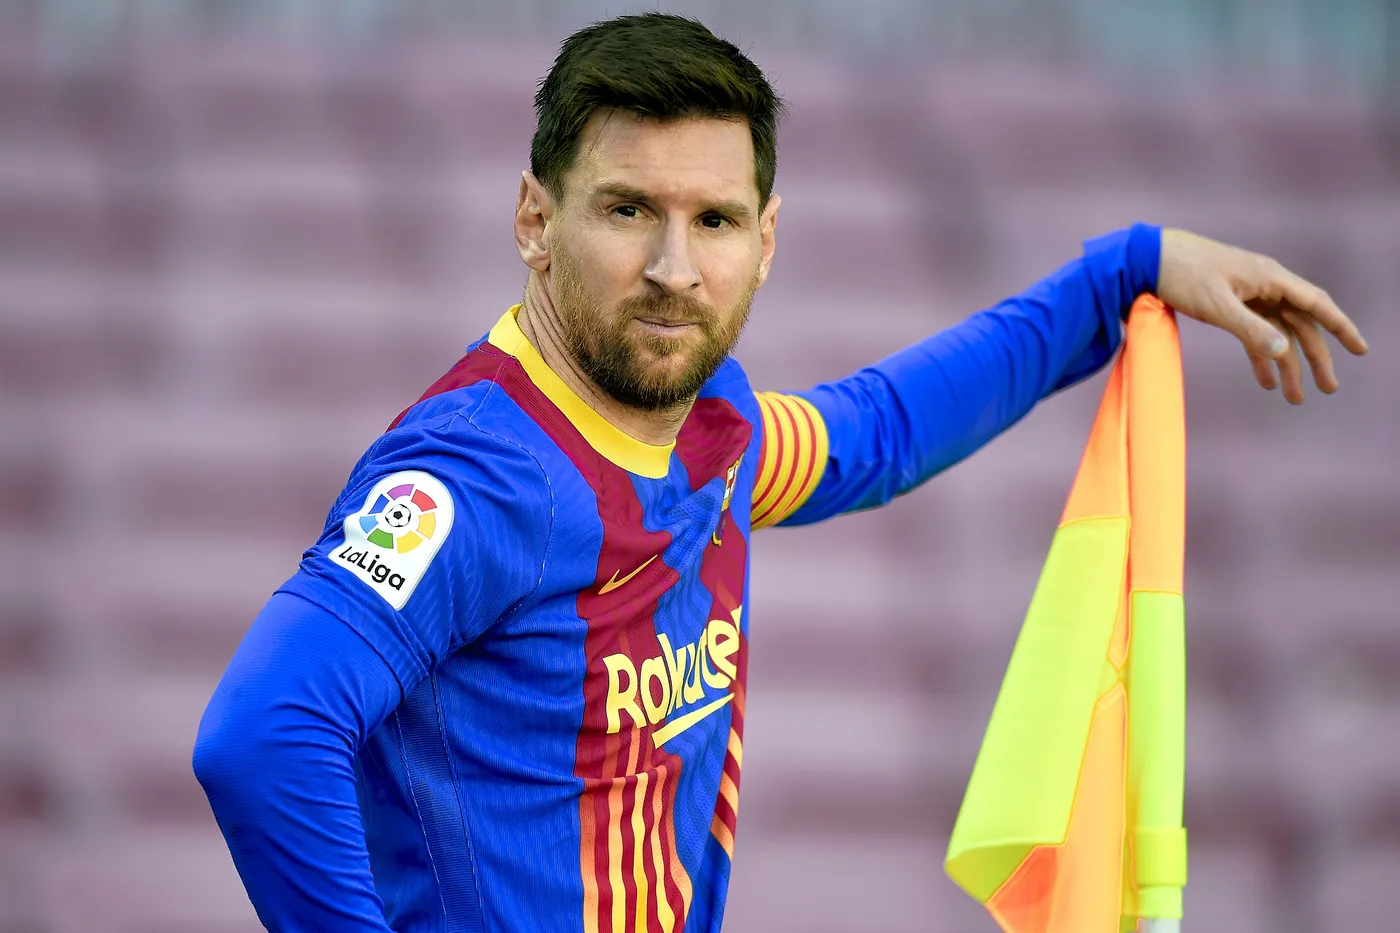 Un ex Barça svela: “Messi in allenamento non si poteva toccare perché…”